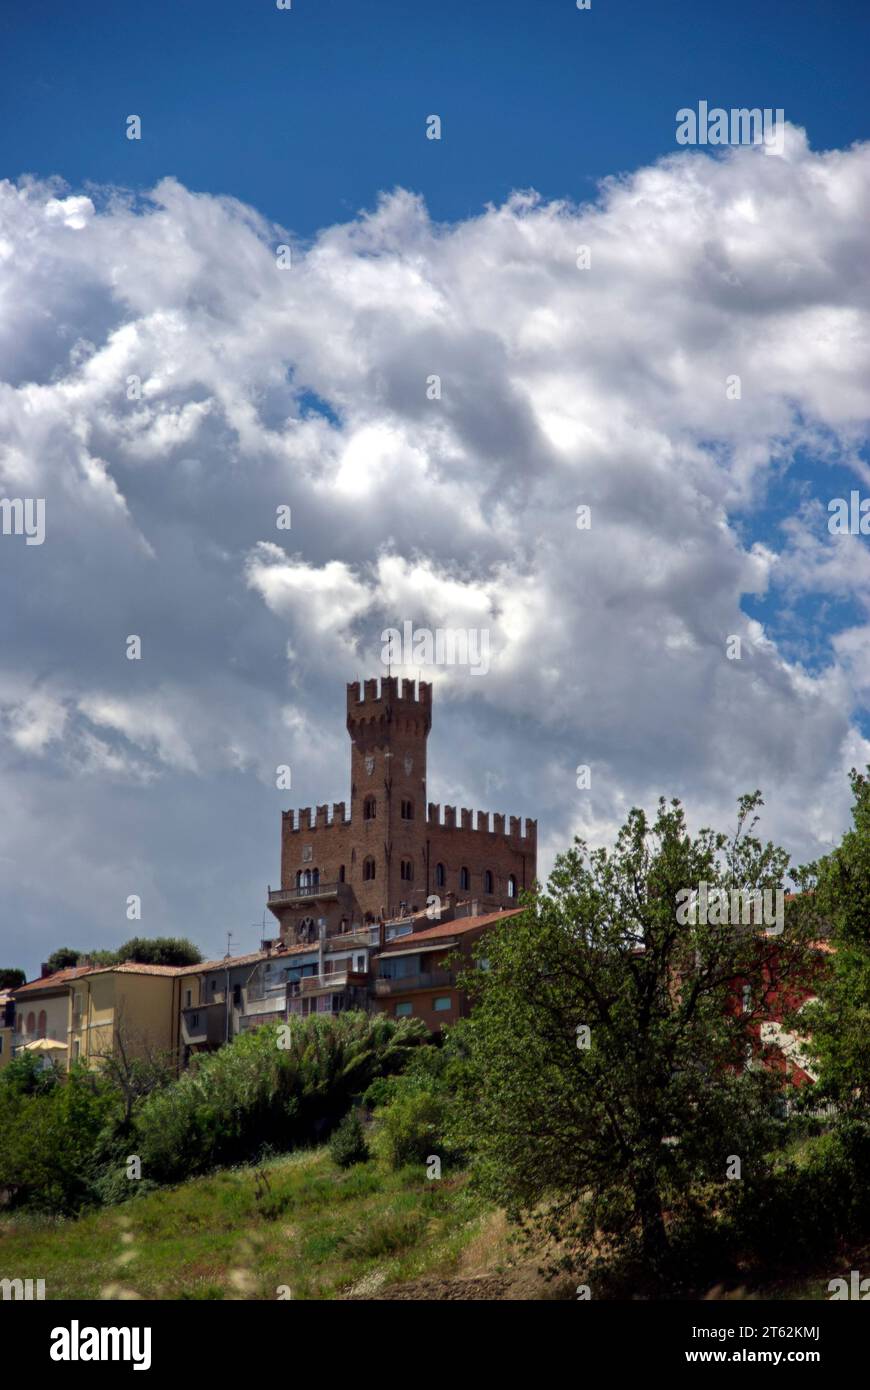 panorama del castello di Tavoleto contro il cielo nuvoloso Stock Photo